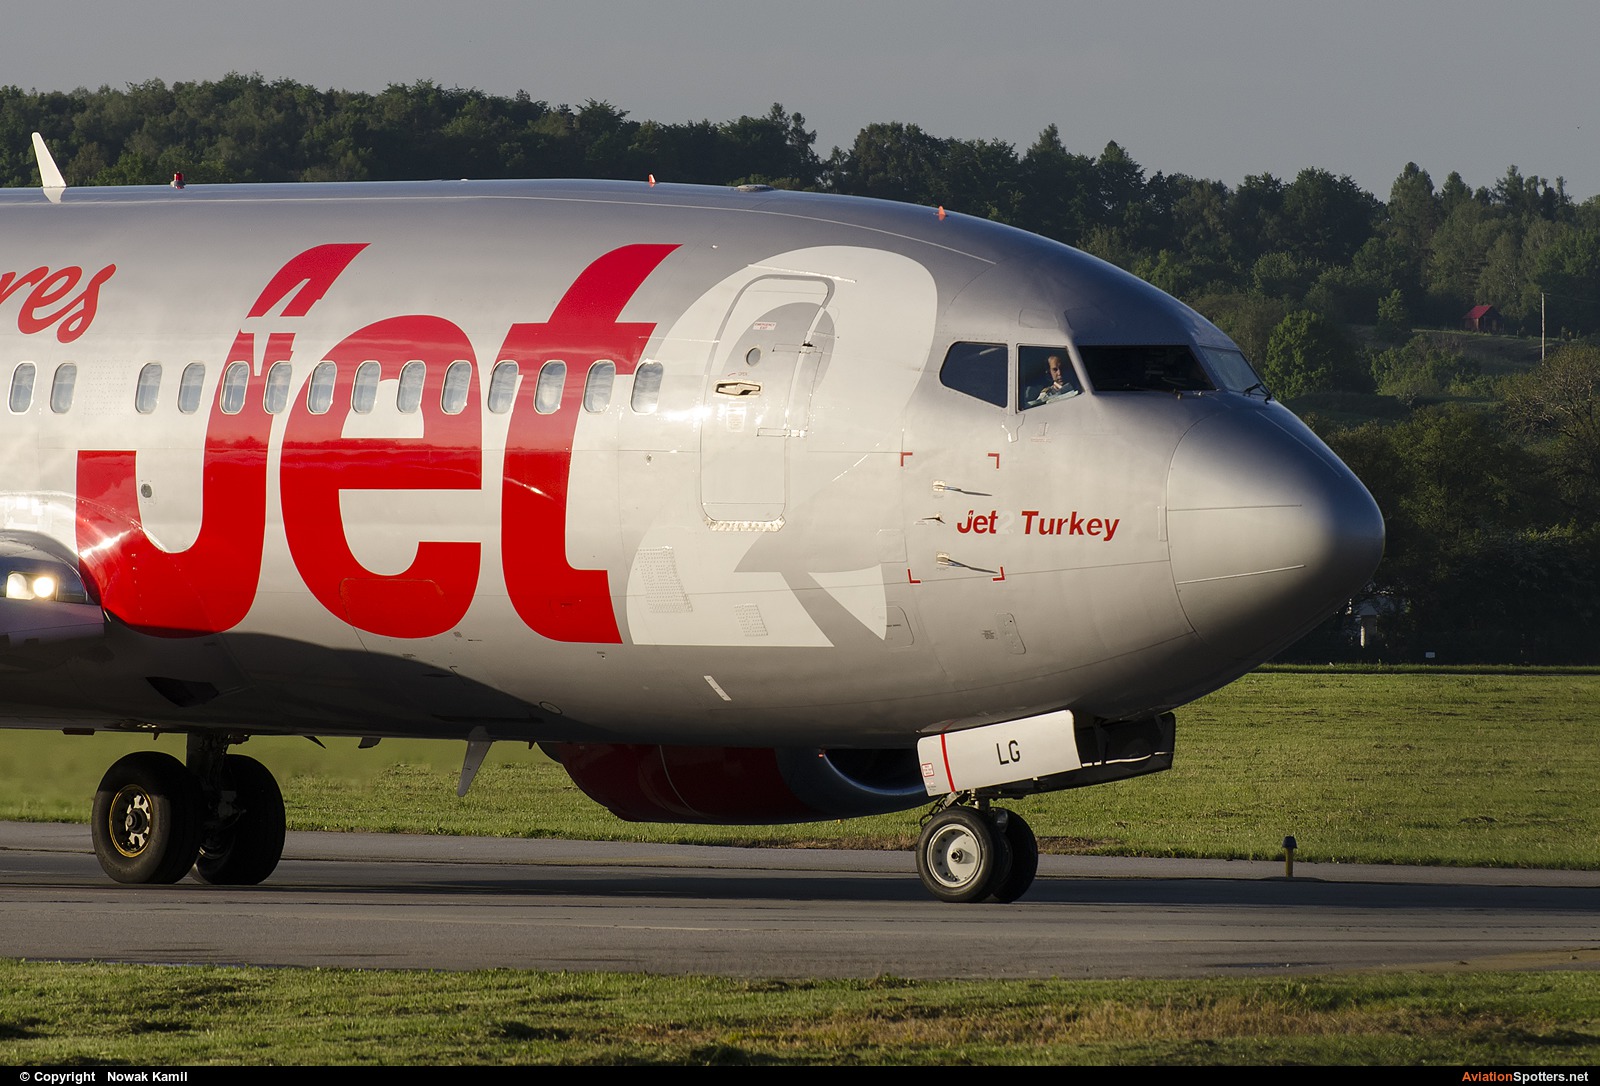 Jet2  -  737-300  (G-CELG) By Nowak Kamil (kretek)